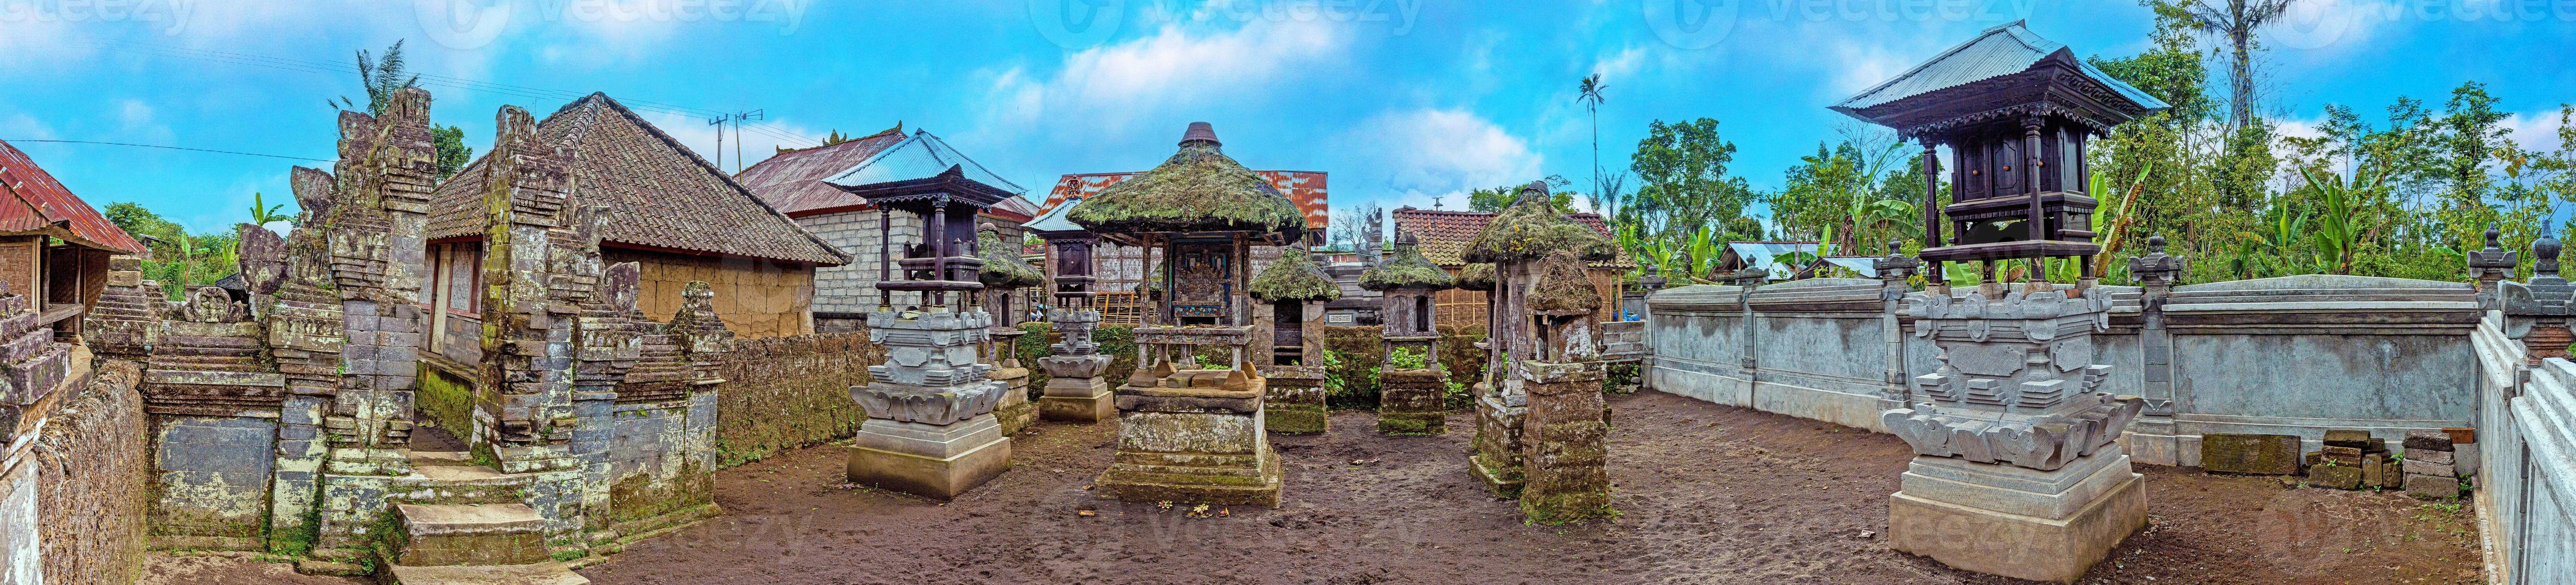 vista panorámica de un típico cementerio hindú en la isla indonesia de bali foto